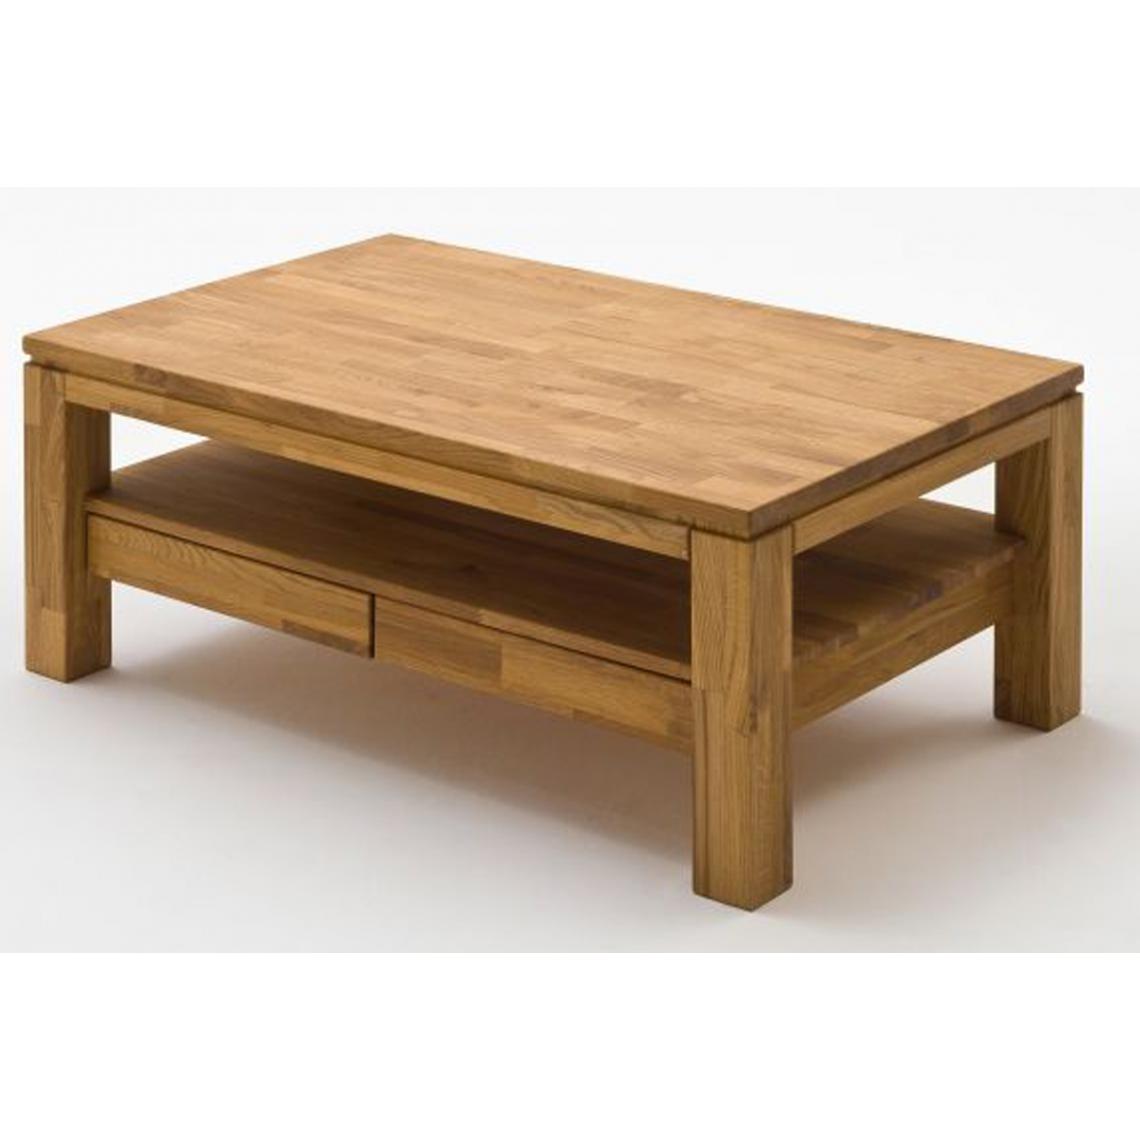 Pegane - Table basse coloris chêne noueux huilé - Longueur 115 x Hauteur 54 x Pronfondeur 70 cm - Tables basses